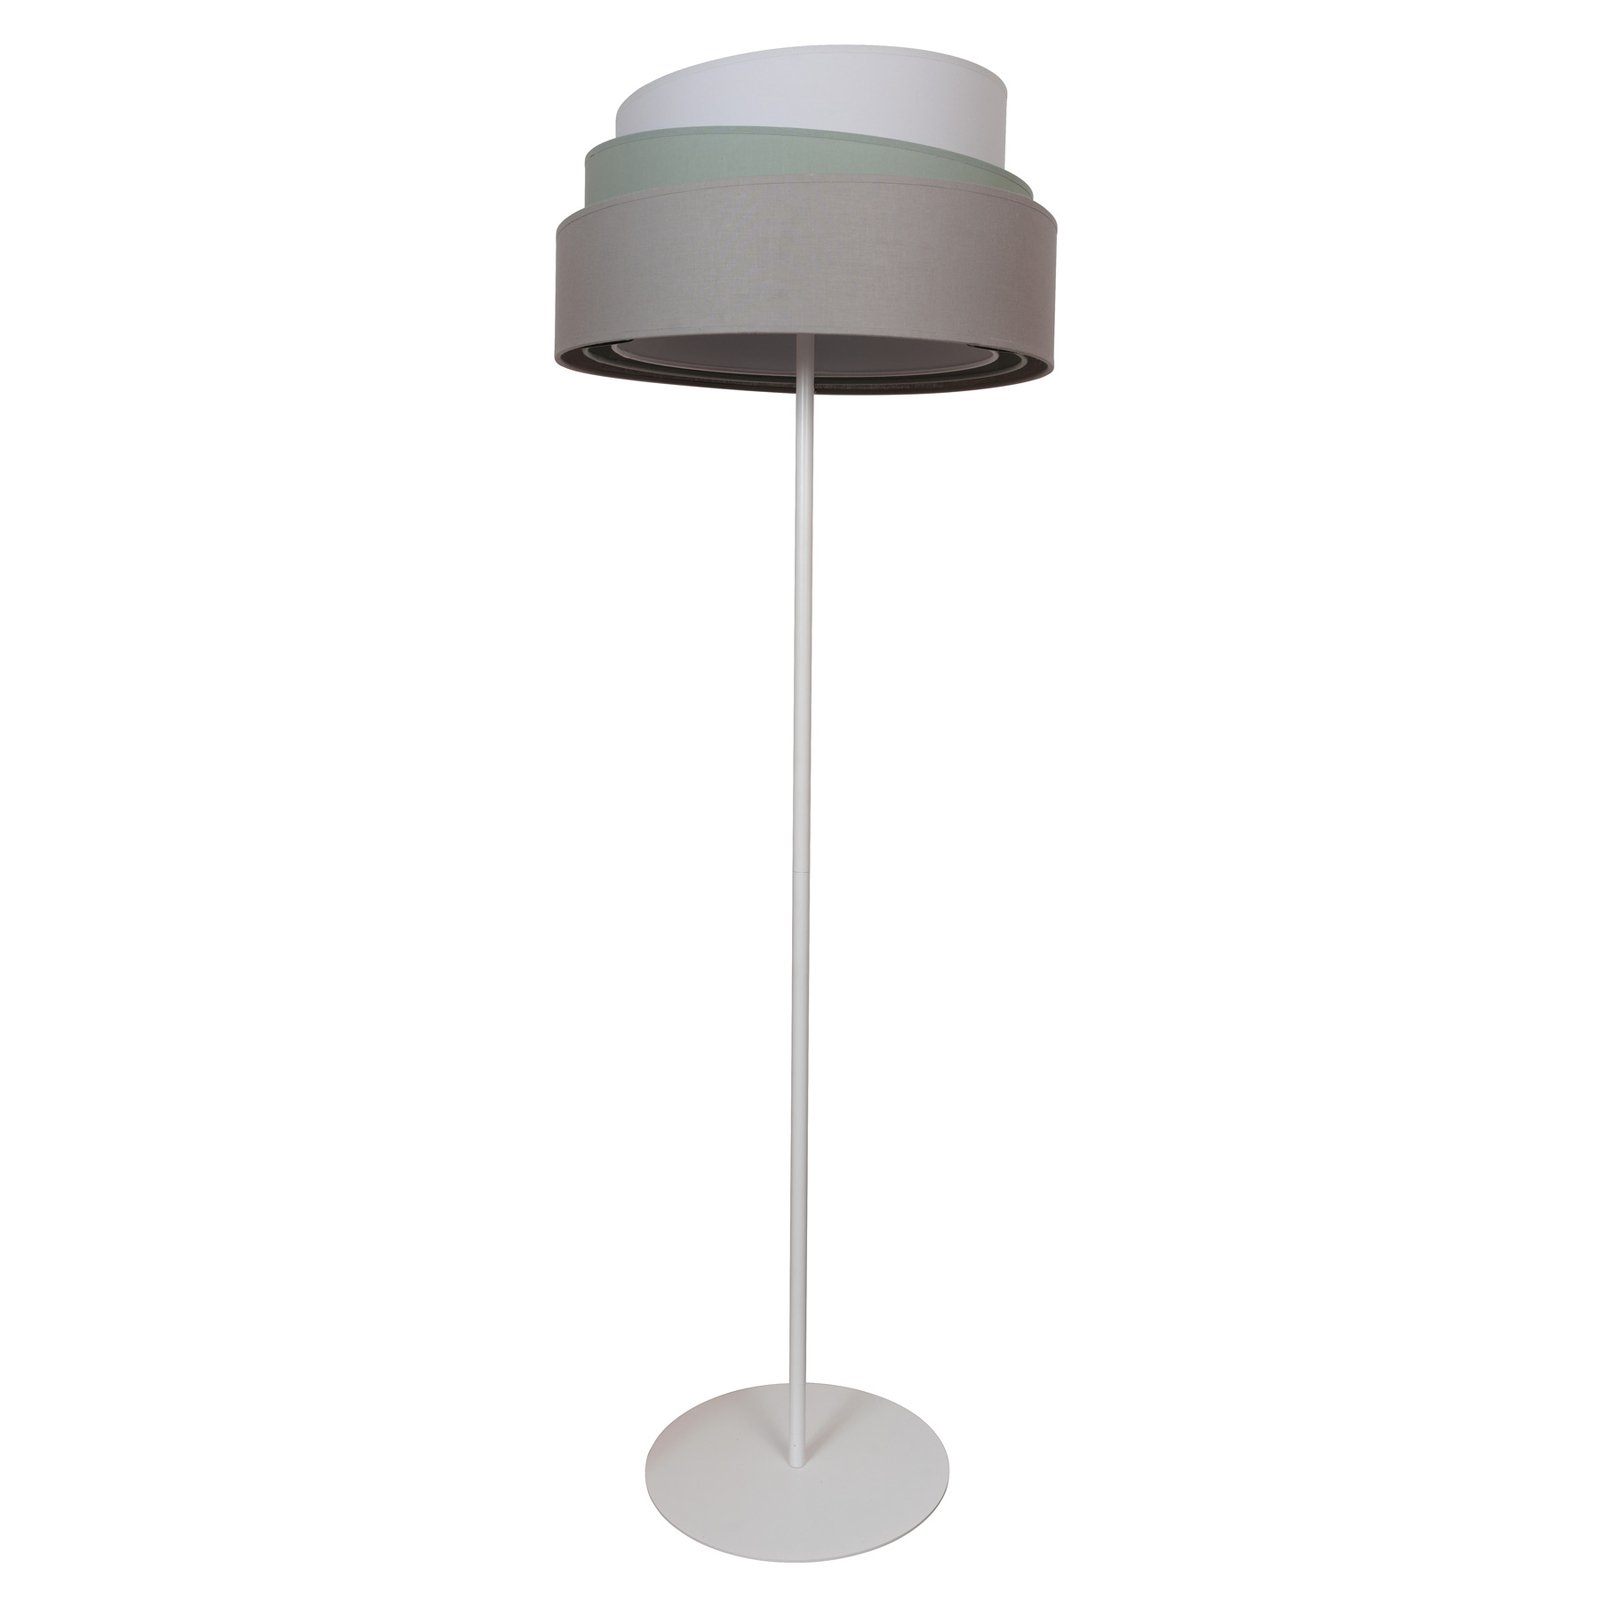 Lampa stojąca Trio monocolor, szara, Ø45cm